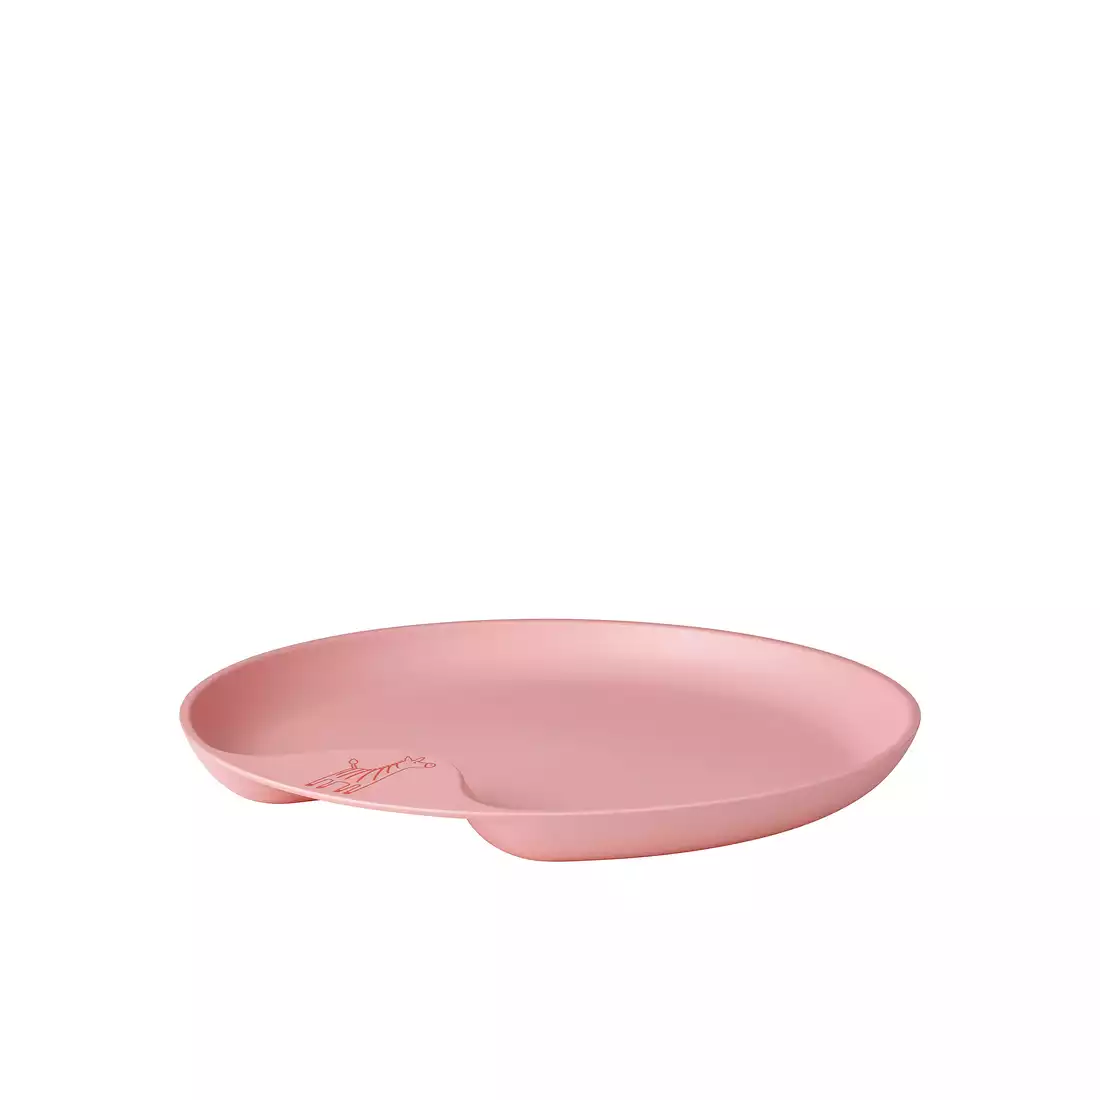 MEPAL MIO children's plate dark pink